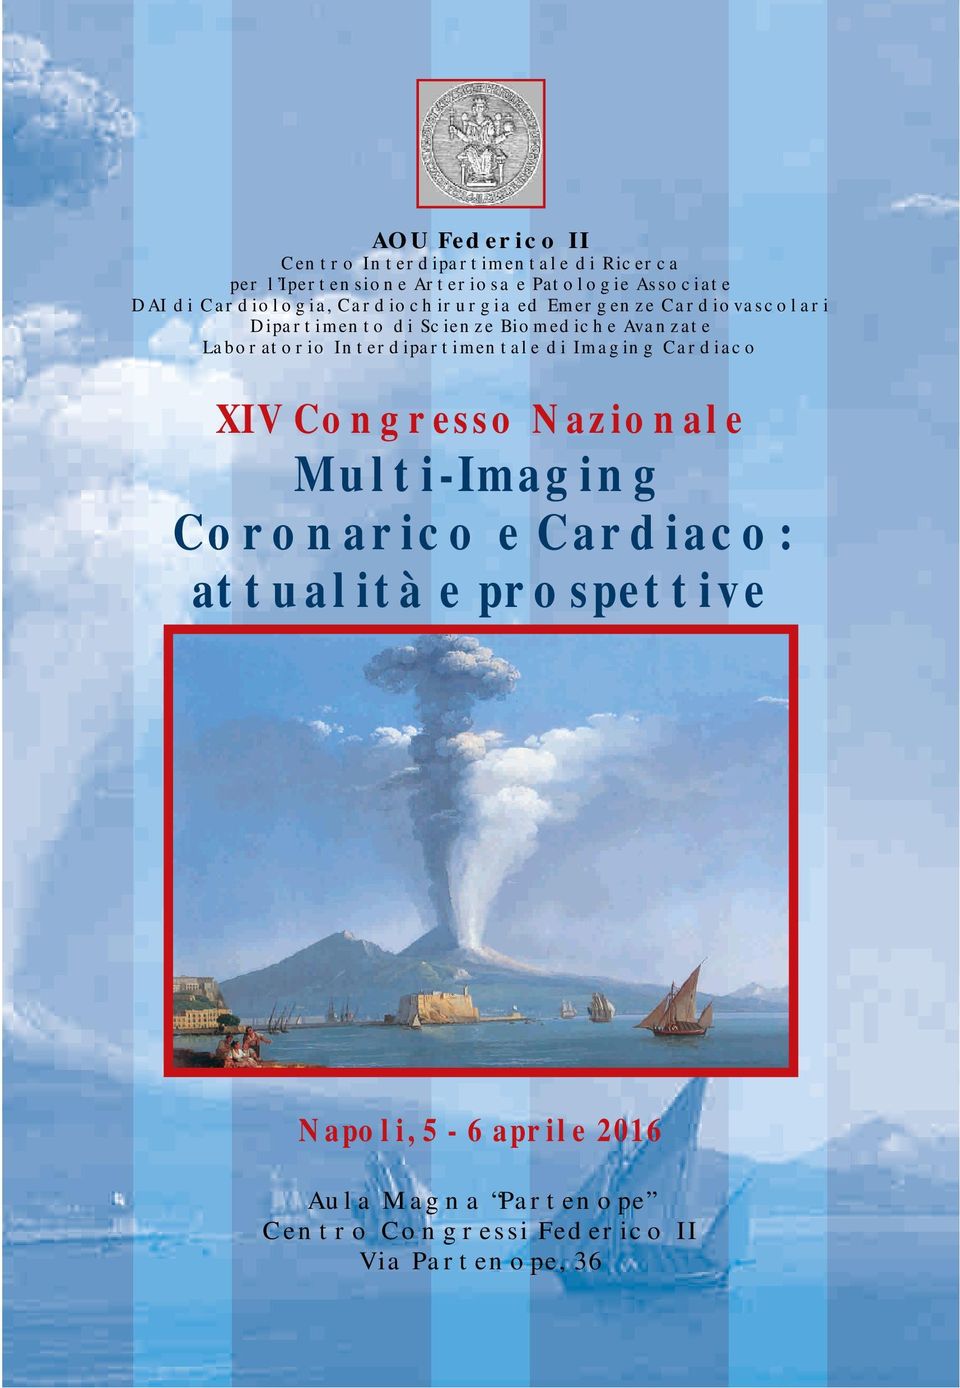 Laboratorio Interdipartimentale di Imaging Cardiaco XIV Congresso Nazionale Multi-Imaging Coronarico e